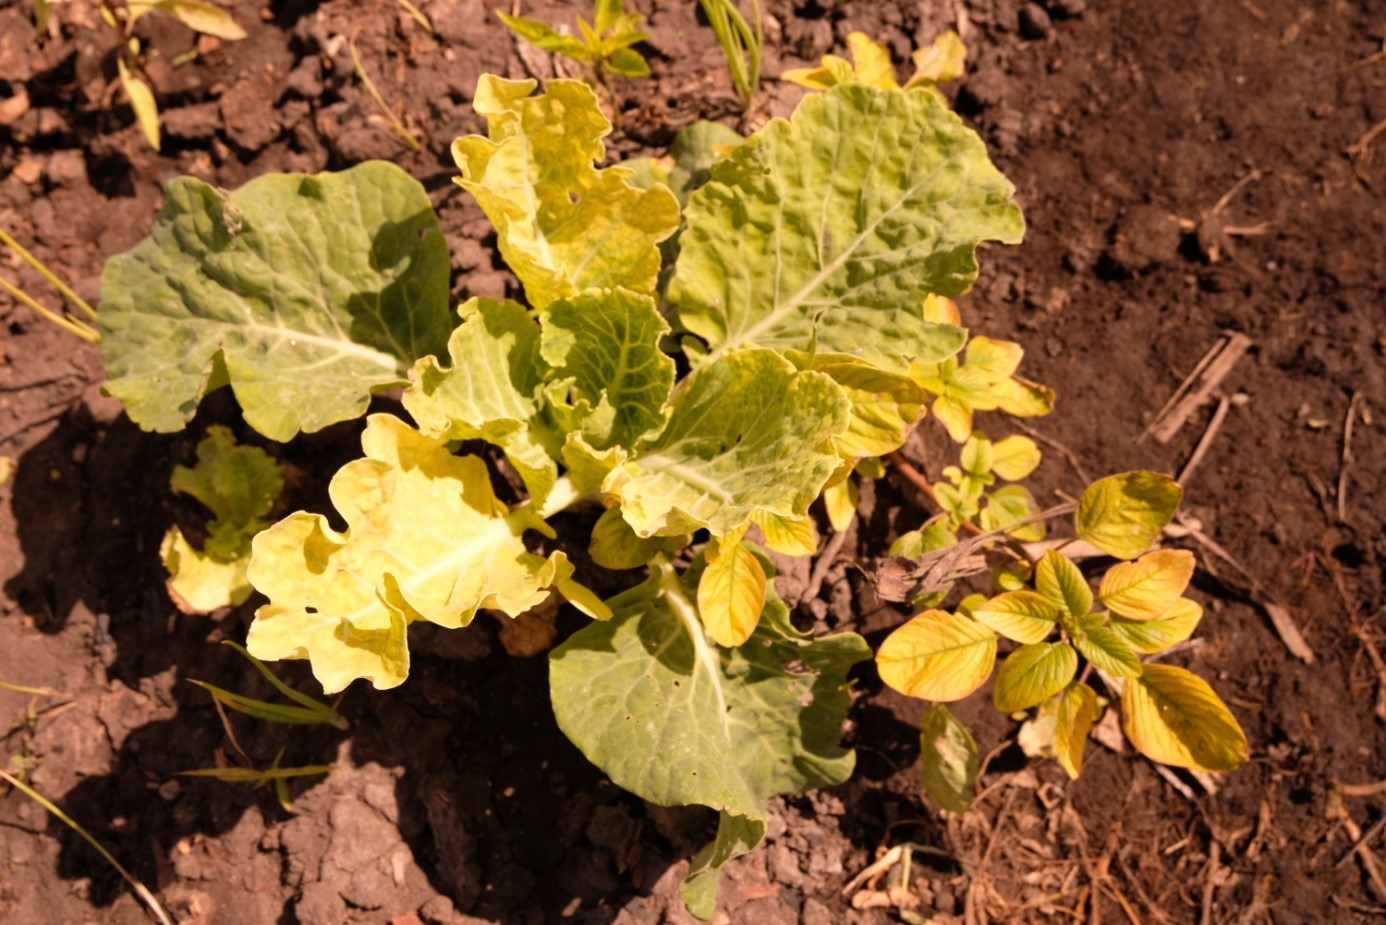 Leaf yellowing, a typical symptom of soil salinity.